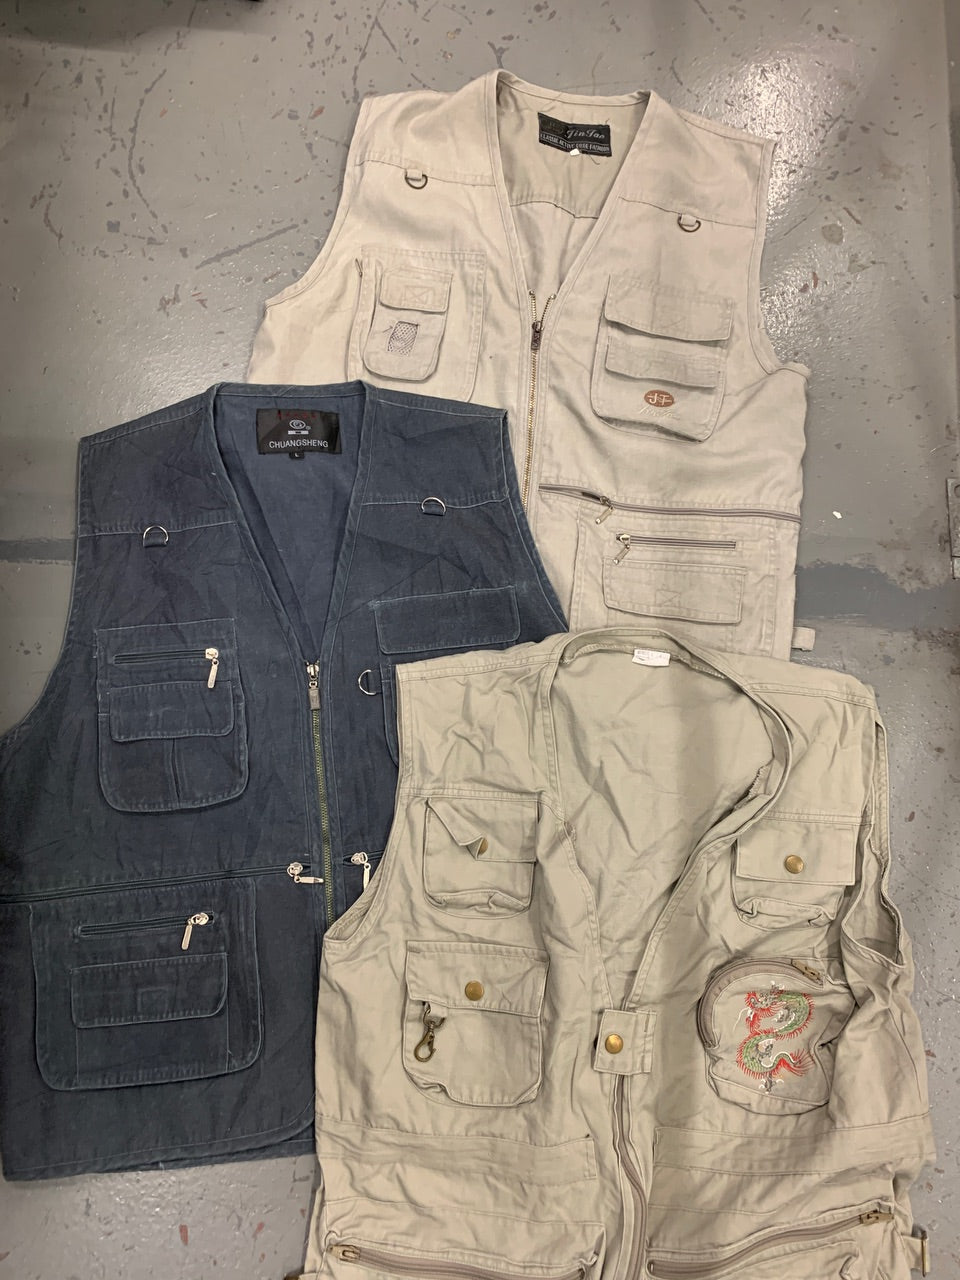 Utility Vests/Gilets - 20 Pieces